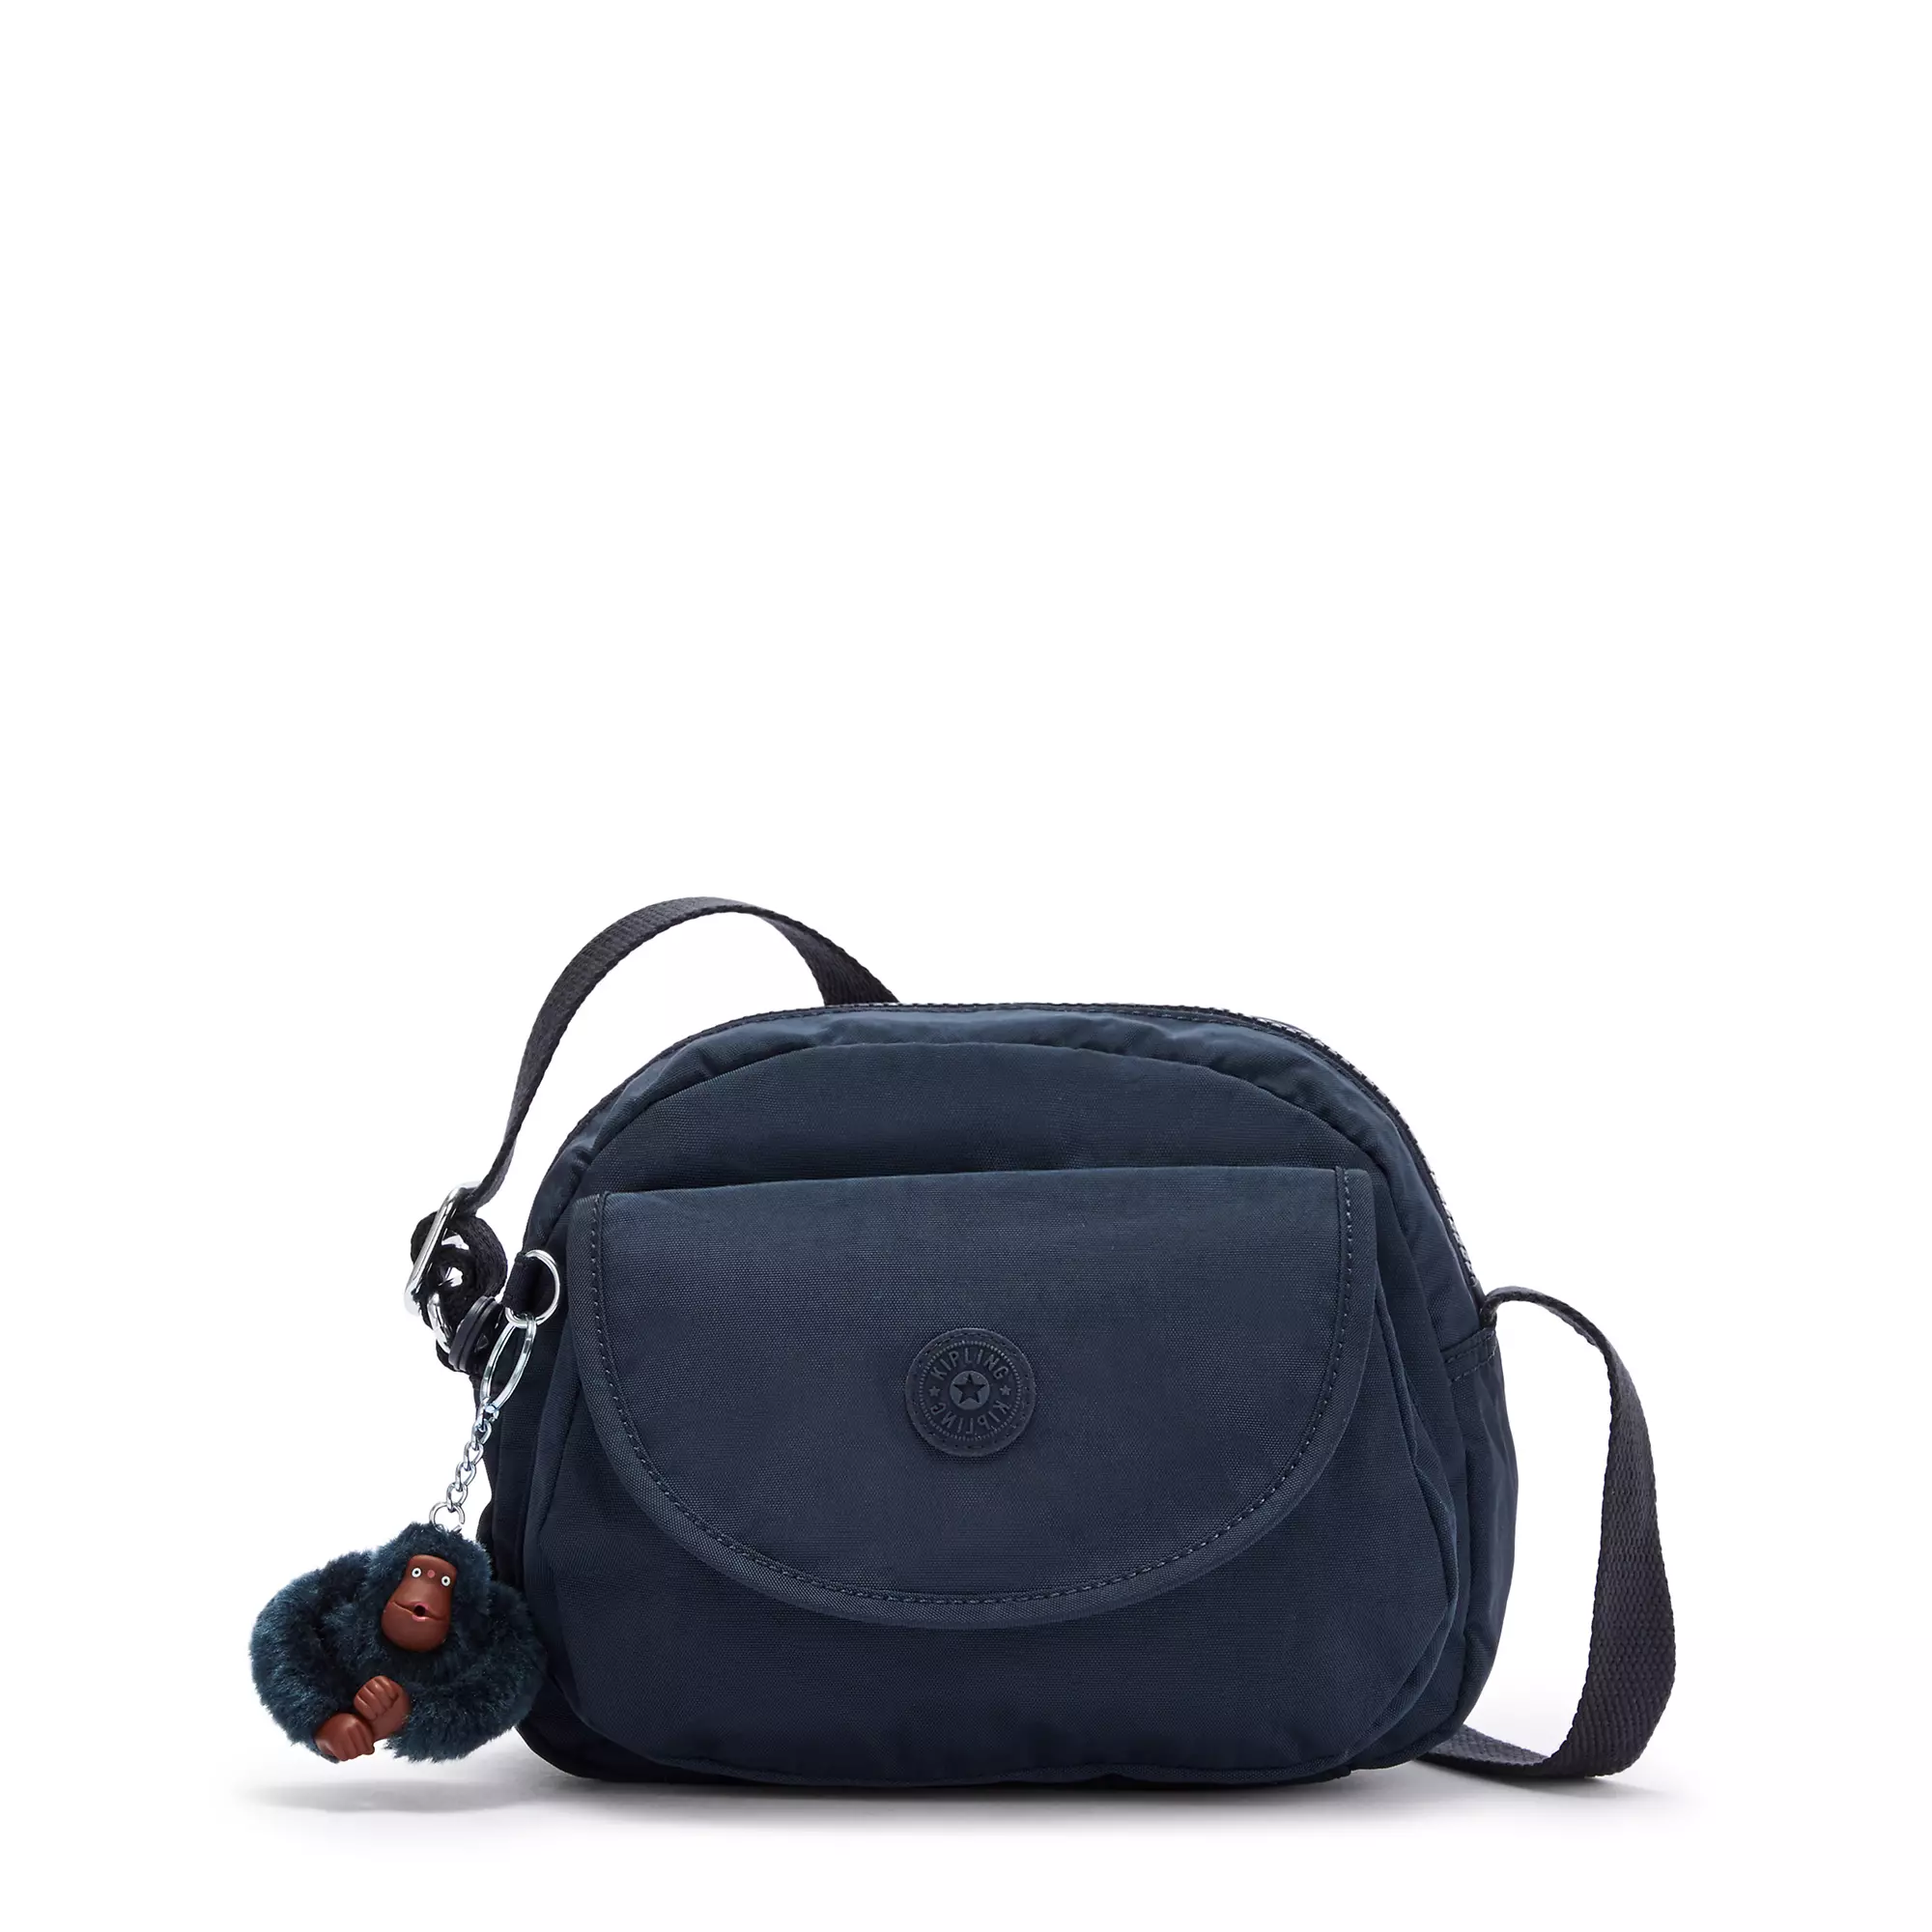 Stelma Crossbody Bag, True Blue Tonal, large-zoomed